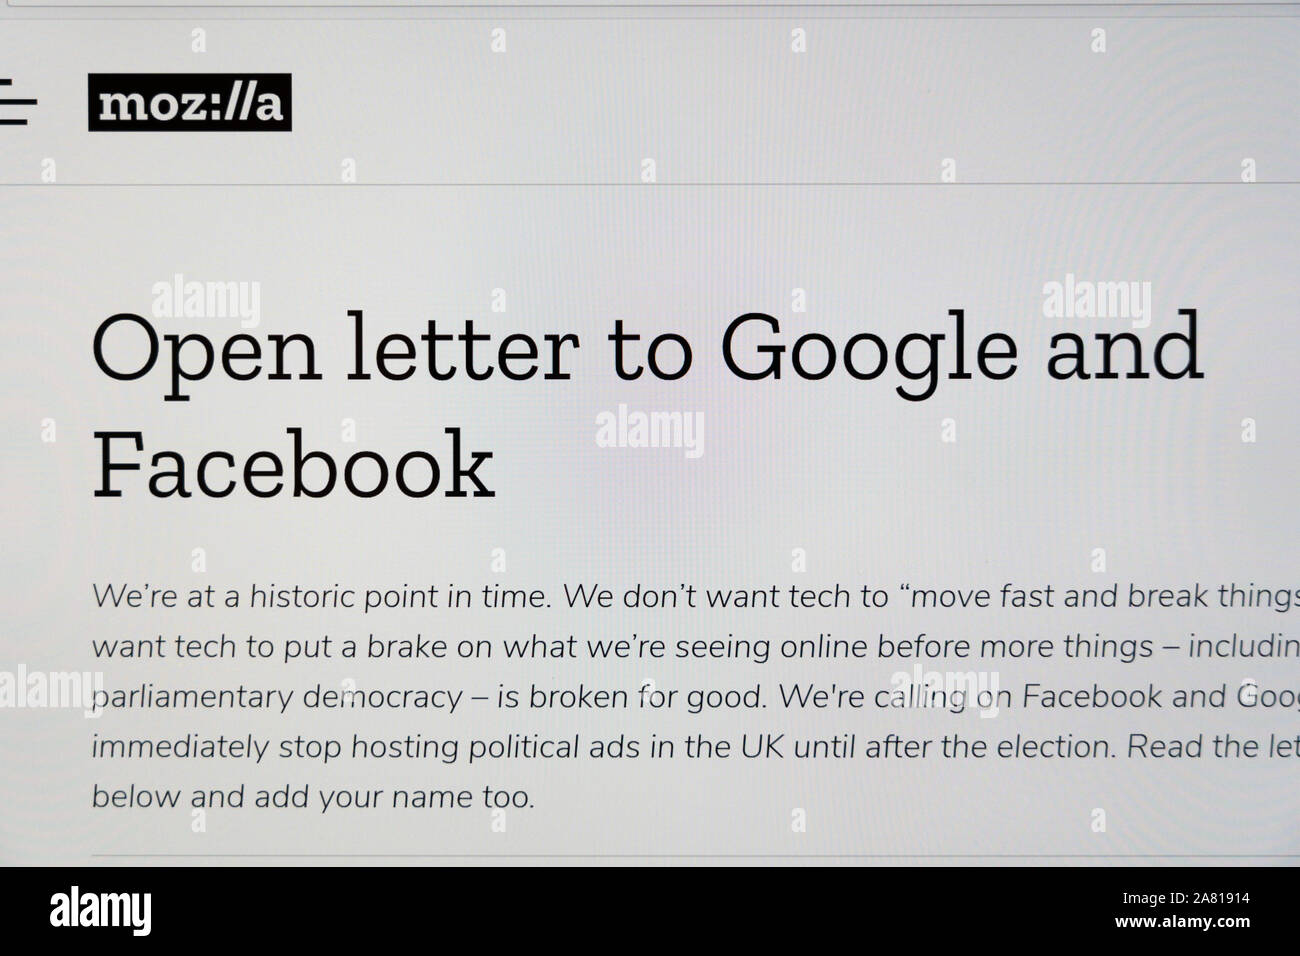 Una carta abierta de Mozilla y otros activistas a Facebook y Google pidiendo la prohibición de anuncios políticos antes de la ELECCIÓN GENERAL DEL REINO UNIDO Foto de stock